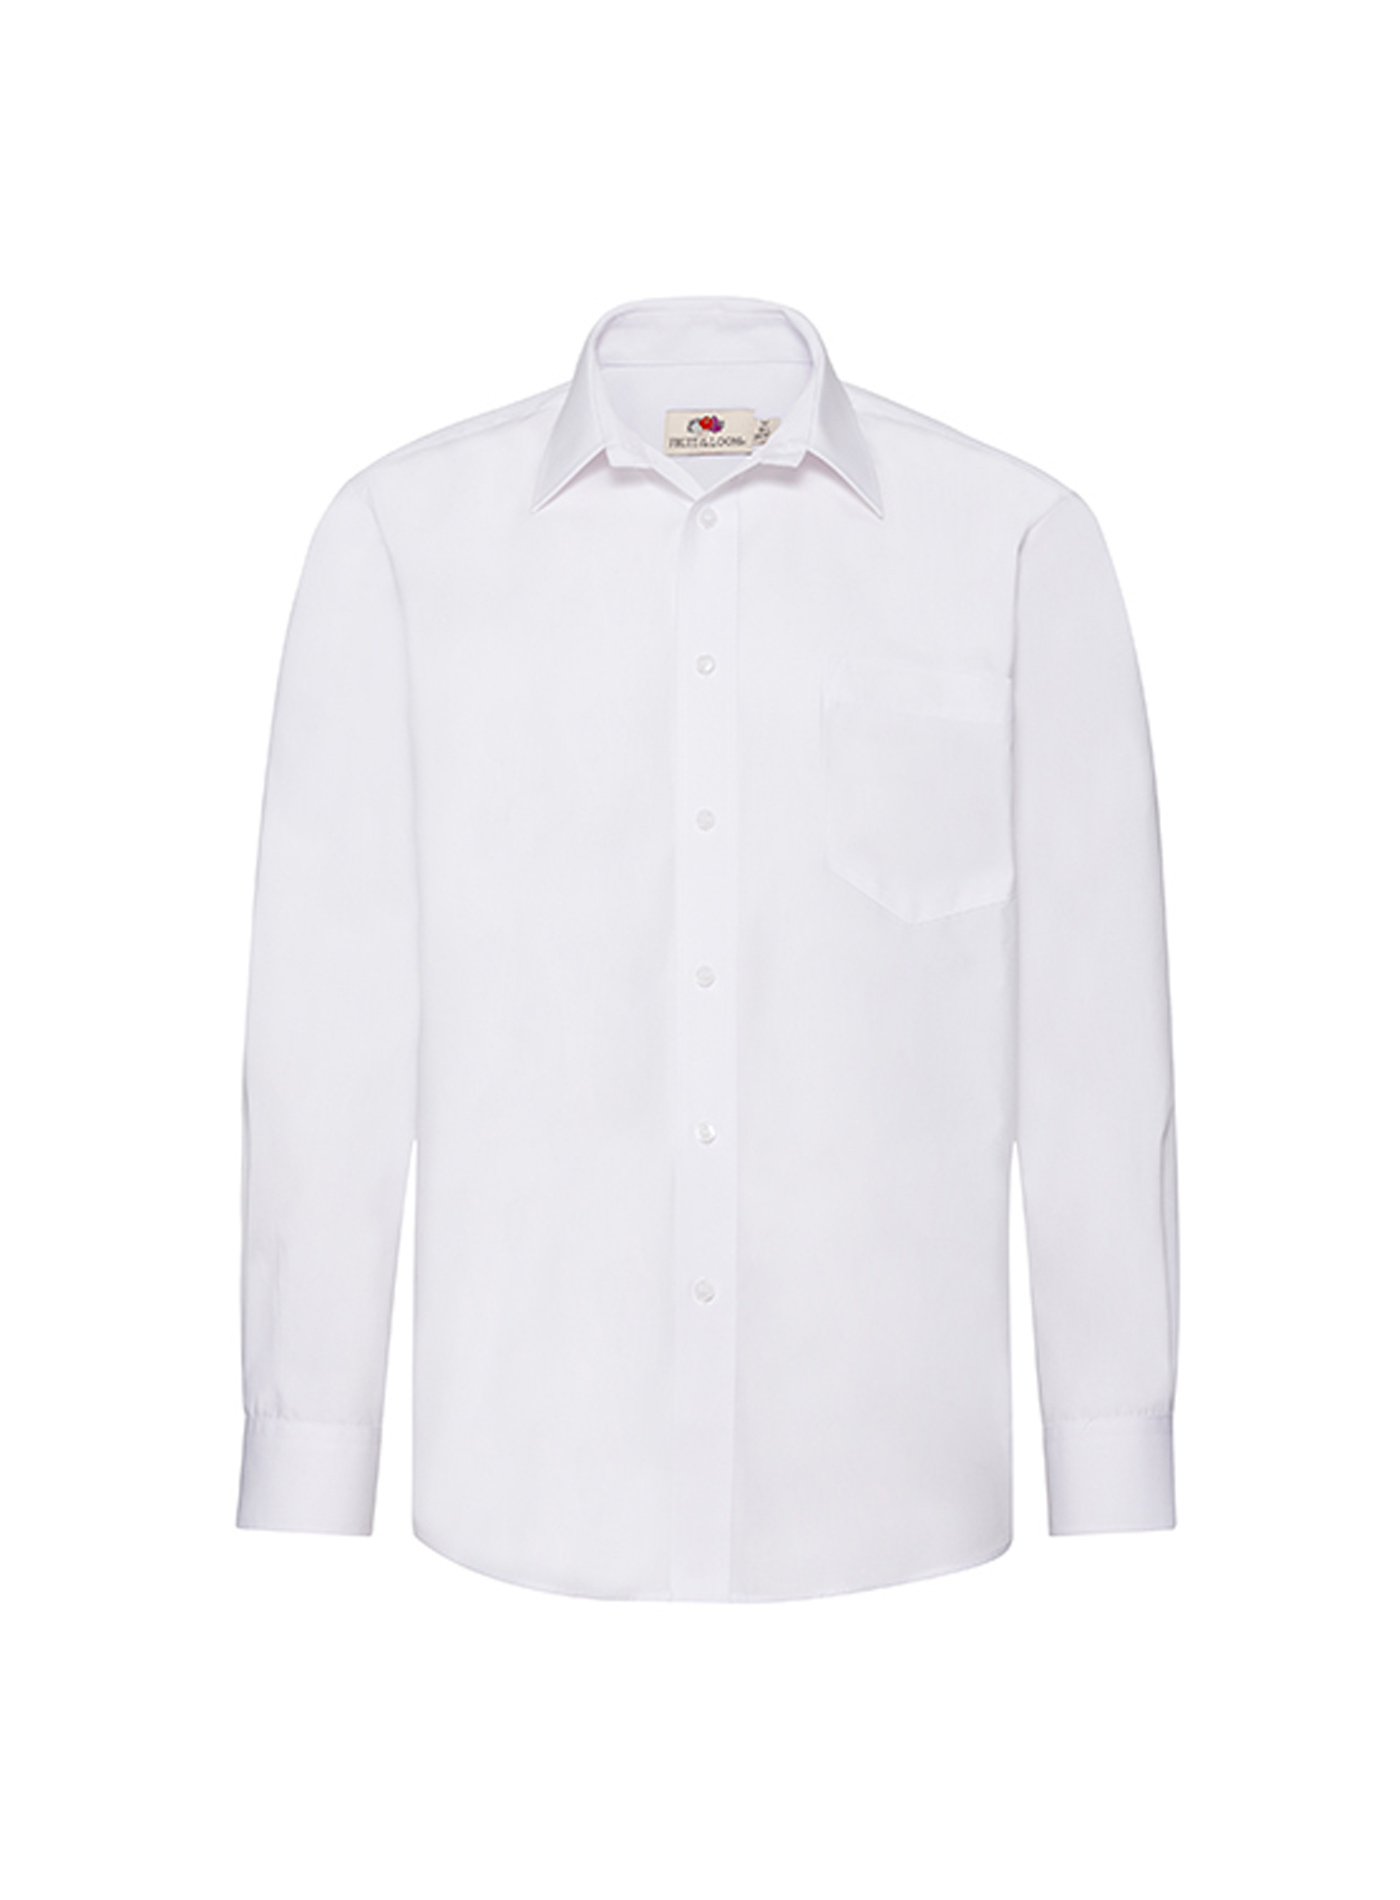 Pánská popelínová košile s dlouhým rukávem Fruit of the Loom - Bílá 3XL